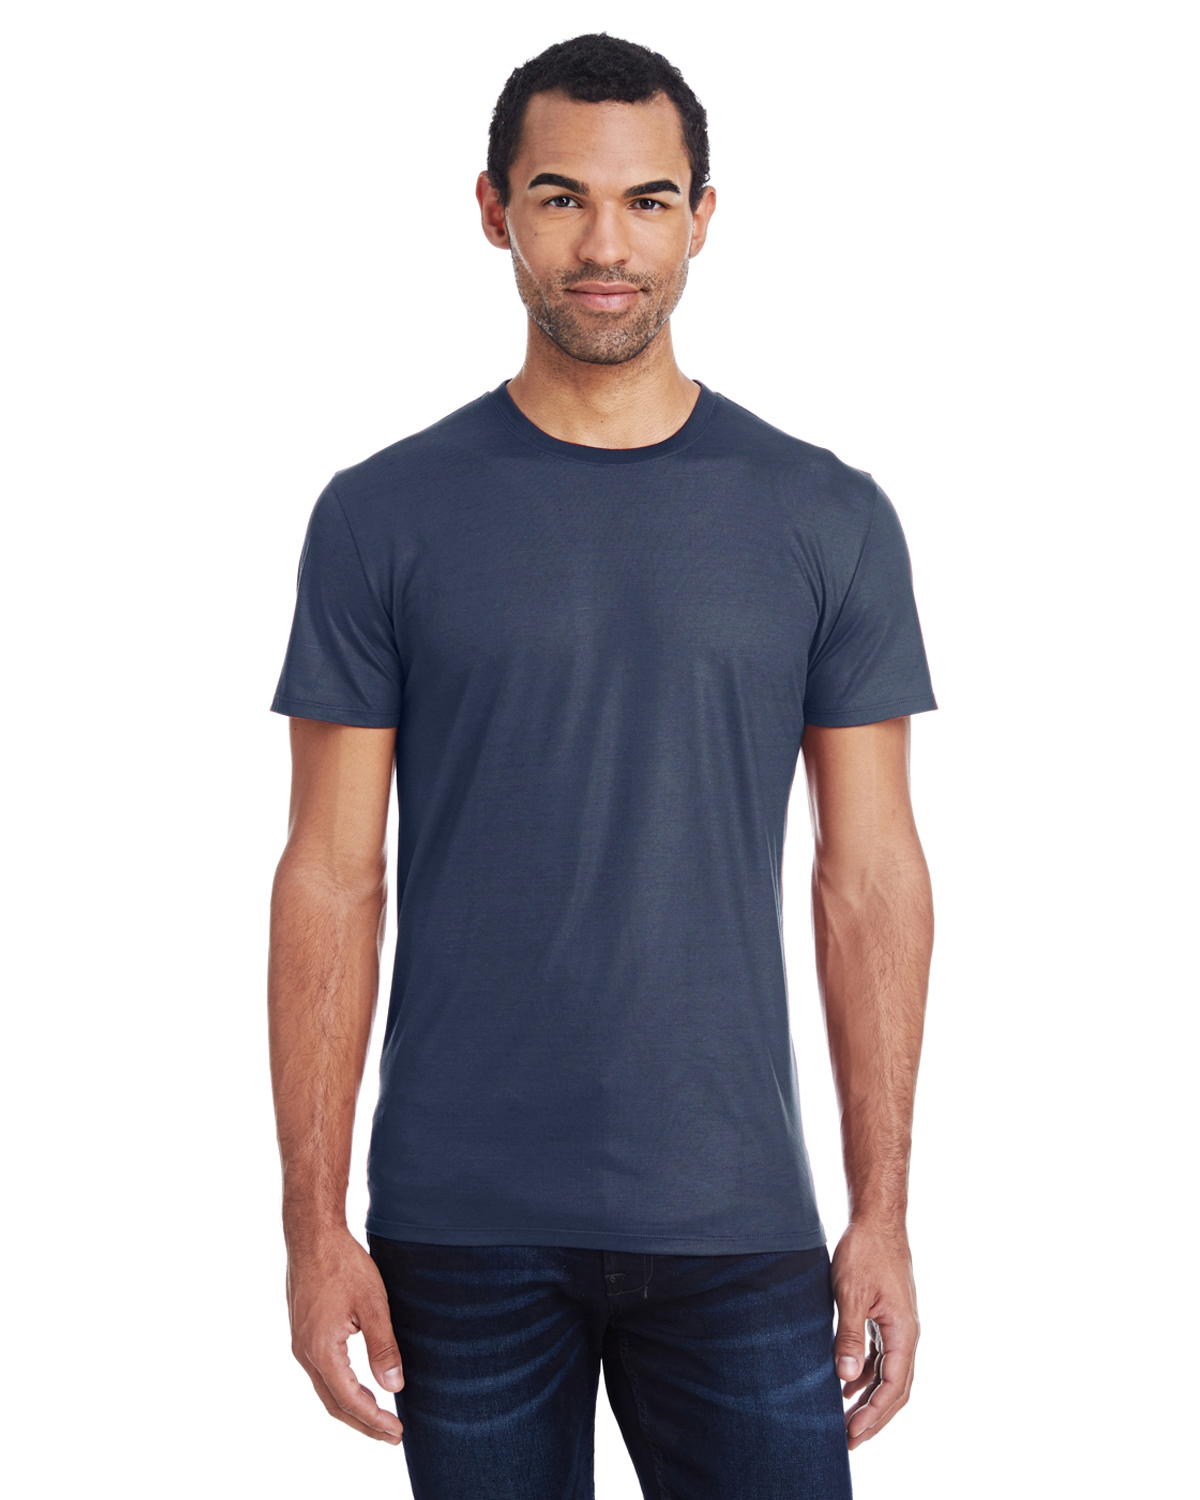 Threadfast Apparel 140A - Men's Liquid Jersey Short-Sleeve T-Shirt $6. ...